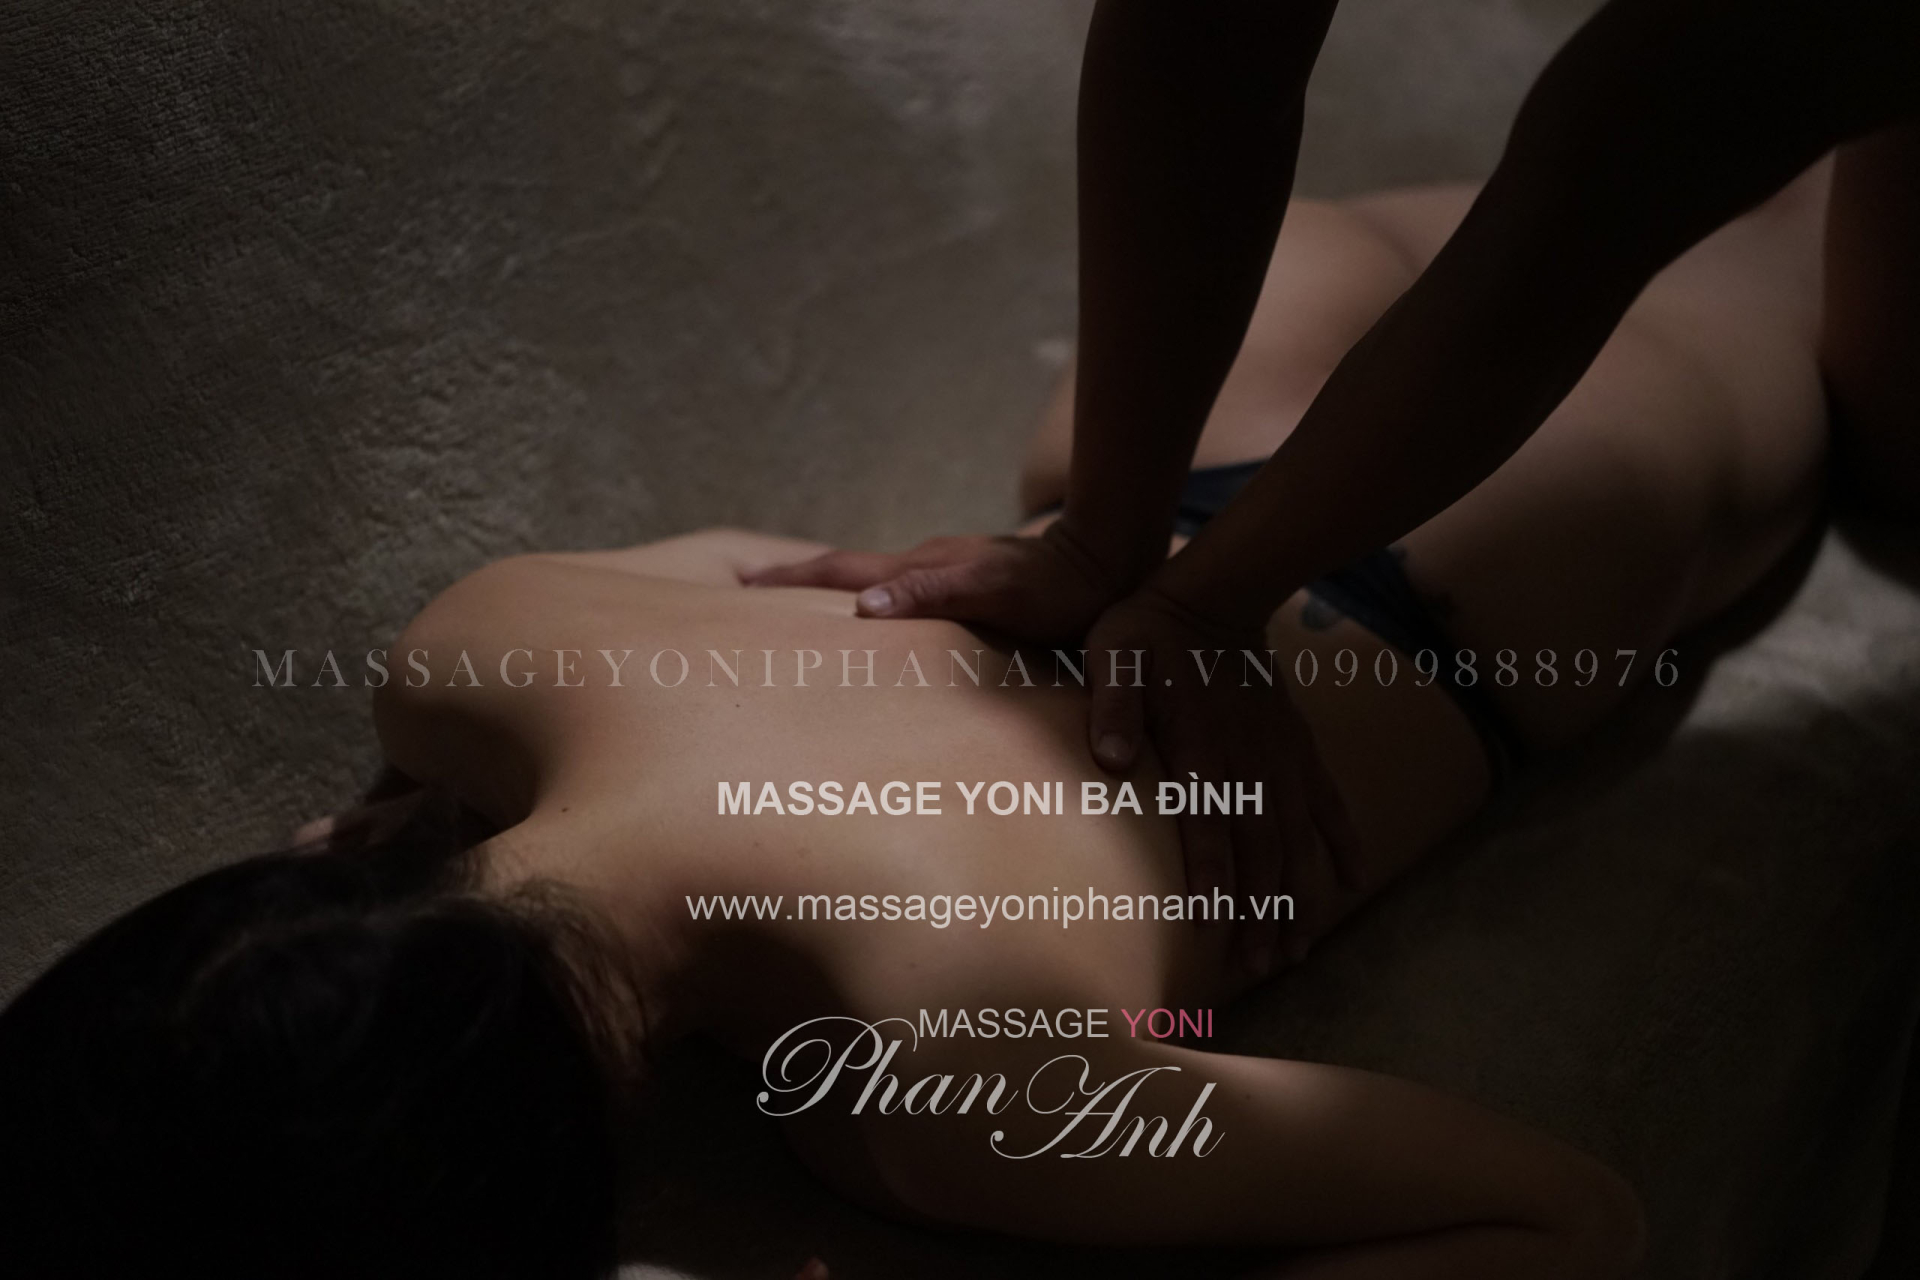 Massage cho nữ tại nhà Ba Đình